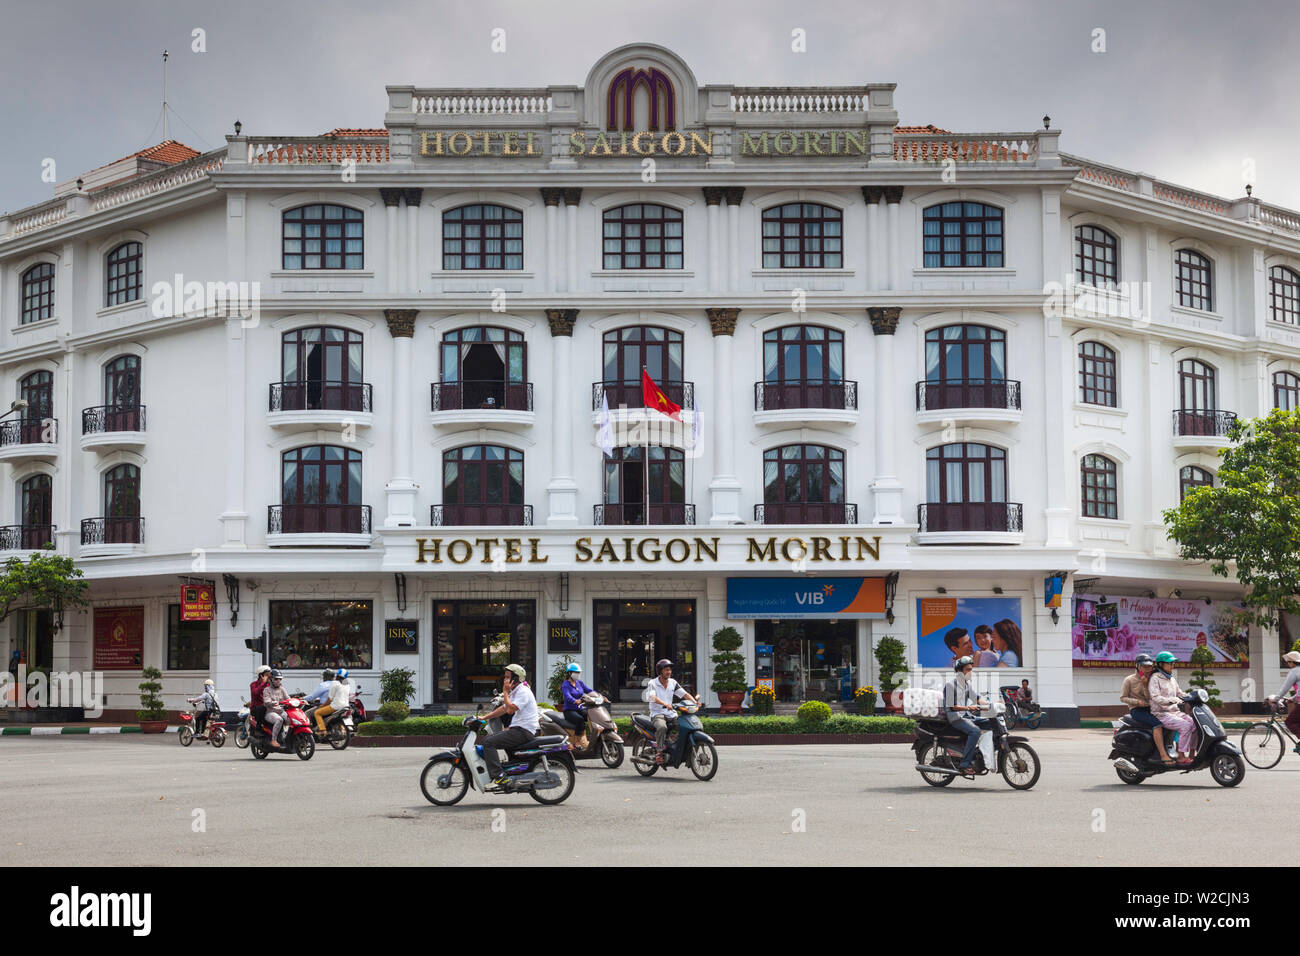 Vietnam, Hue, historic Hotel Saigon Morin, exterior Stock Photo